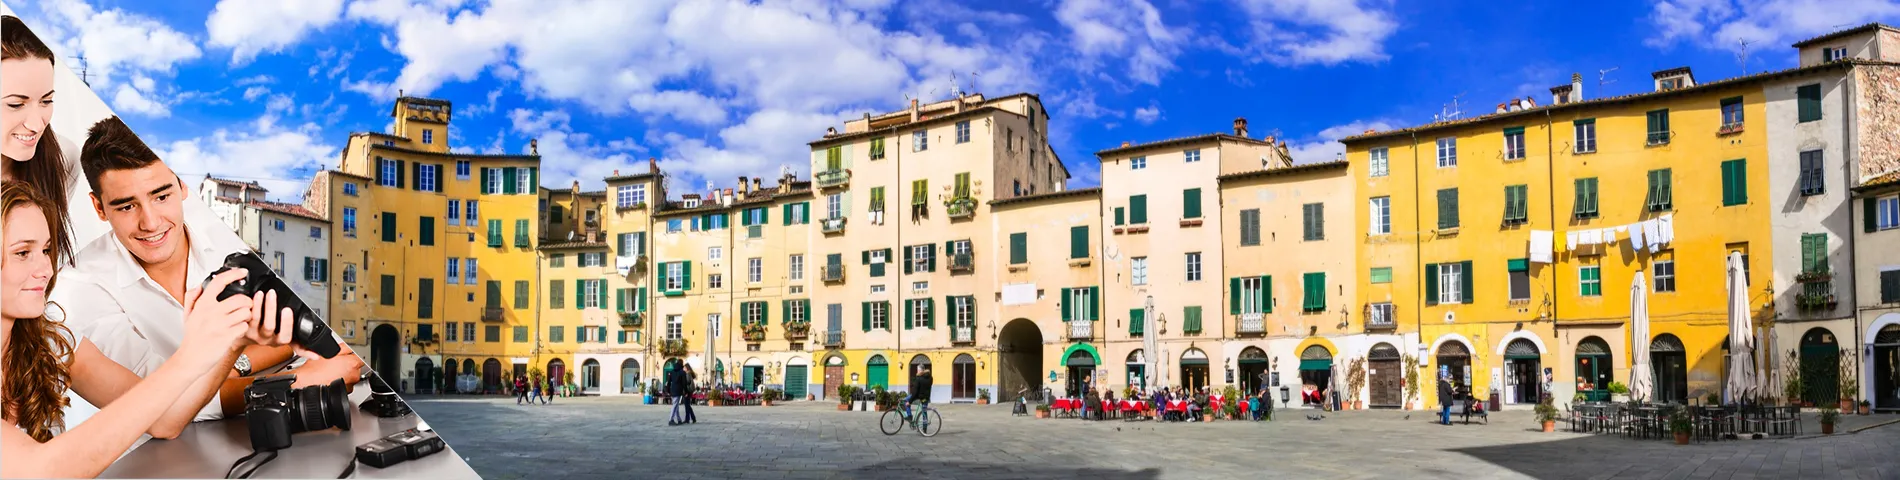 Lucca - Italiano y fotografía